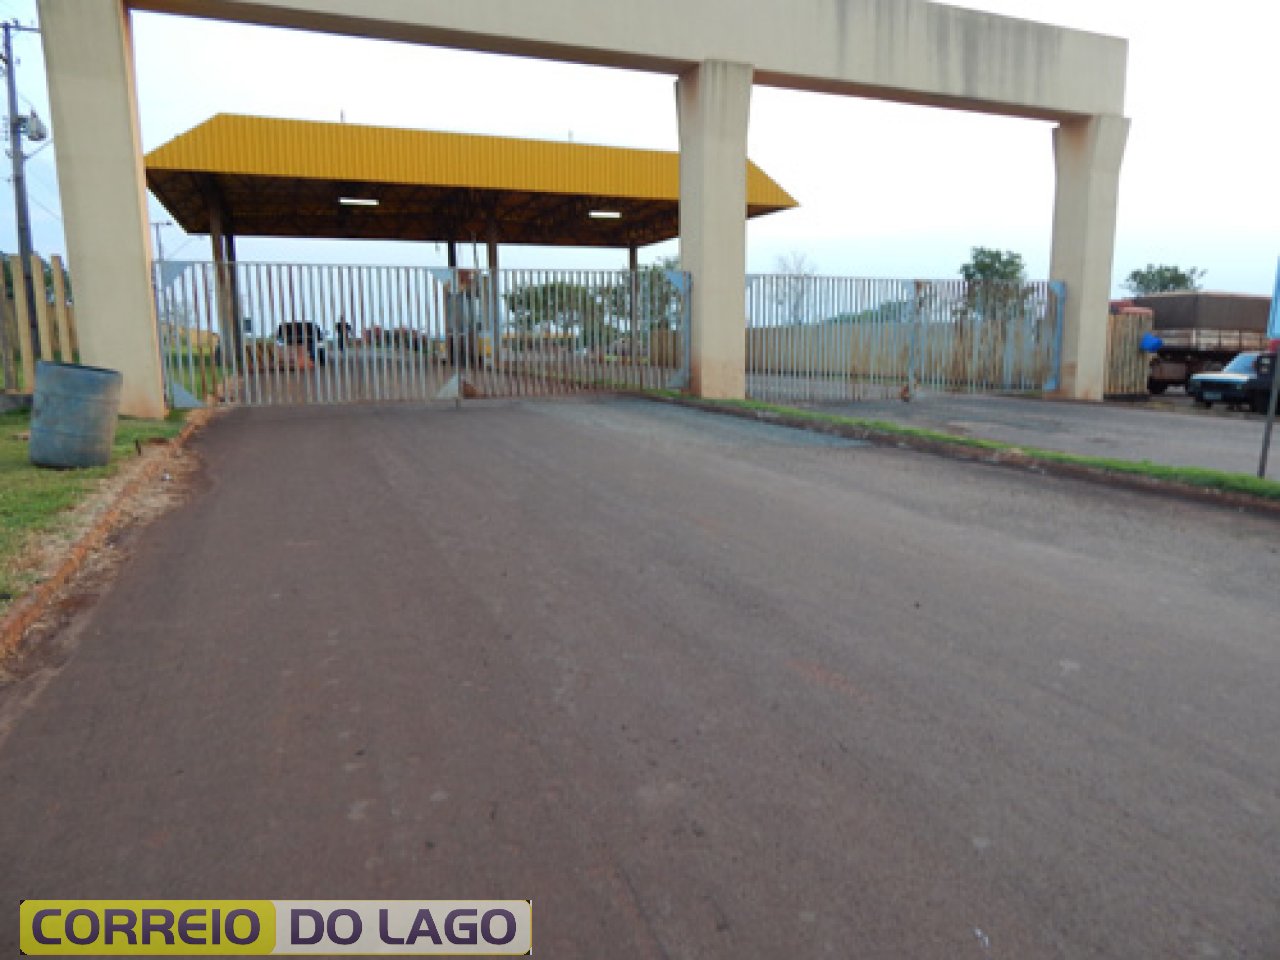 Portão que controla a entrada e saída de caminhões no Porto Internacional de SH. Foto/2014.